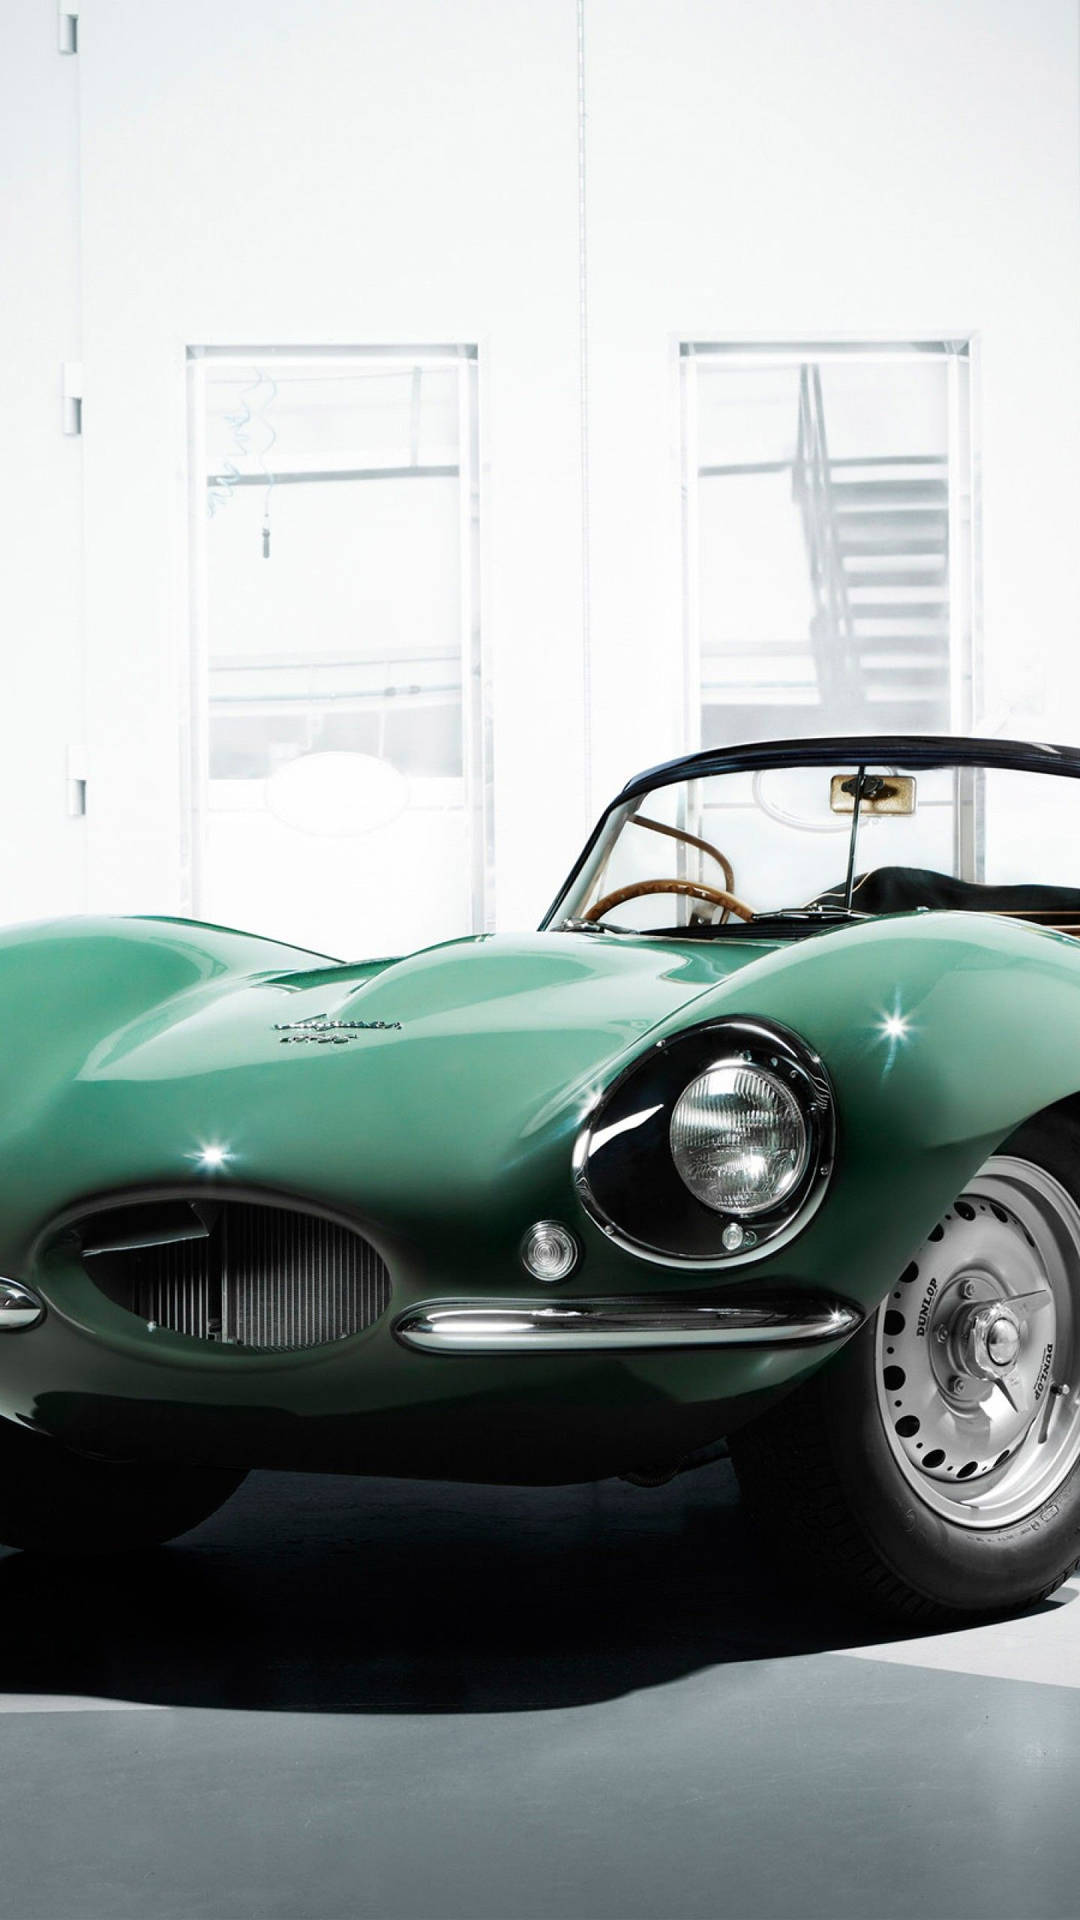 Green Vintage Jaguar Car